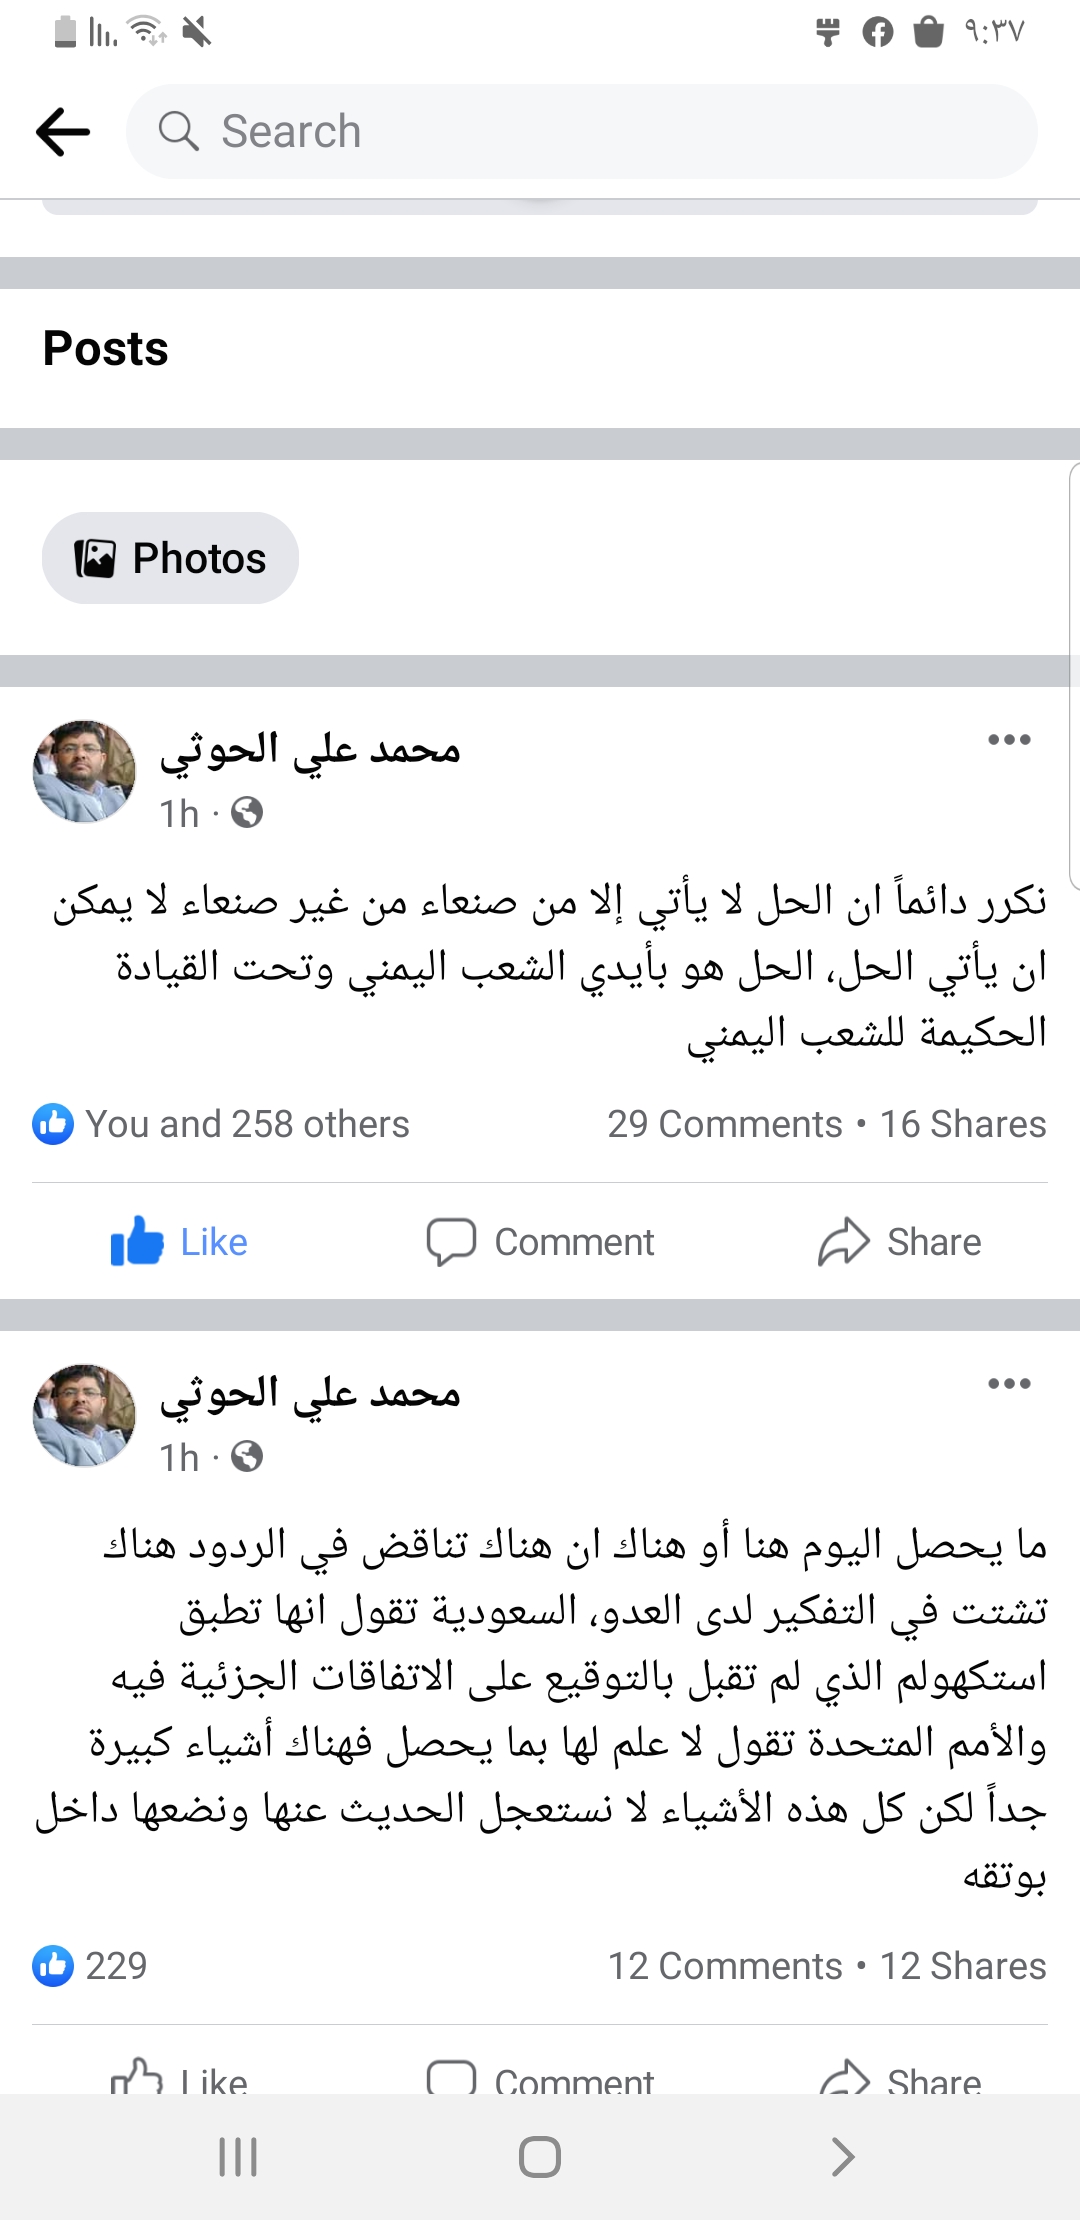 ورد الآن .. الثورية العليا بصنعاء تكشف عن المكان الوحيد الذي يأتي منه الحل ووقف الحرب على اليمن  .. تفاصيل